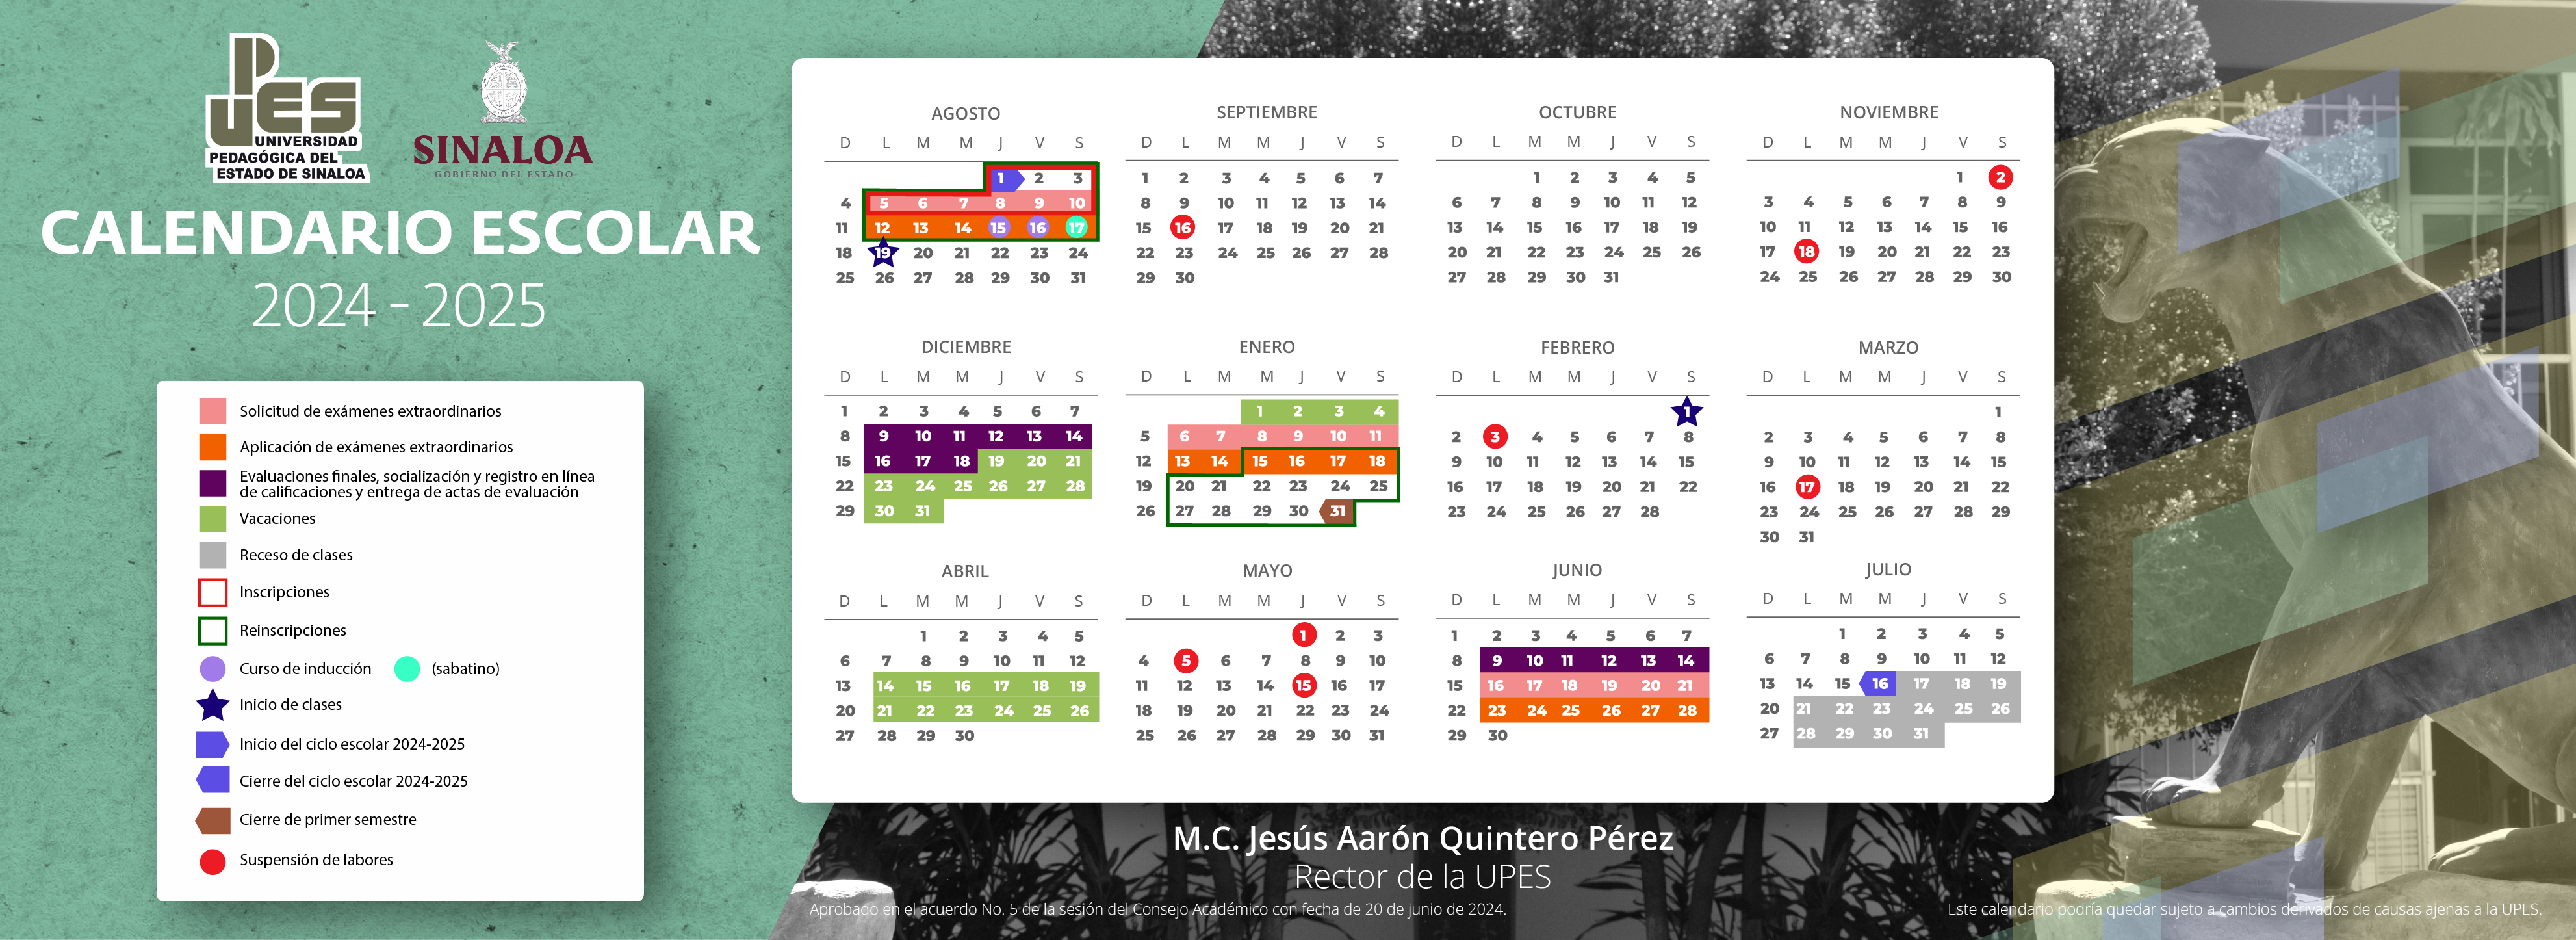 Calendario_escolar_2024-2025_web_1